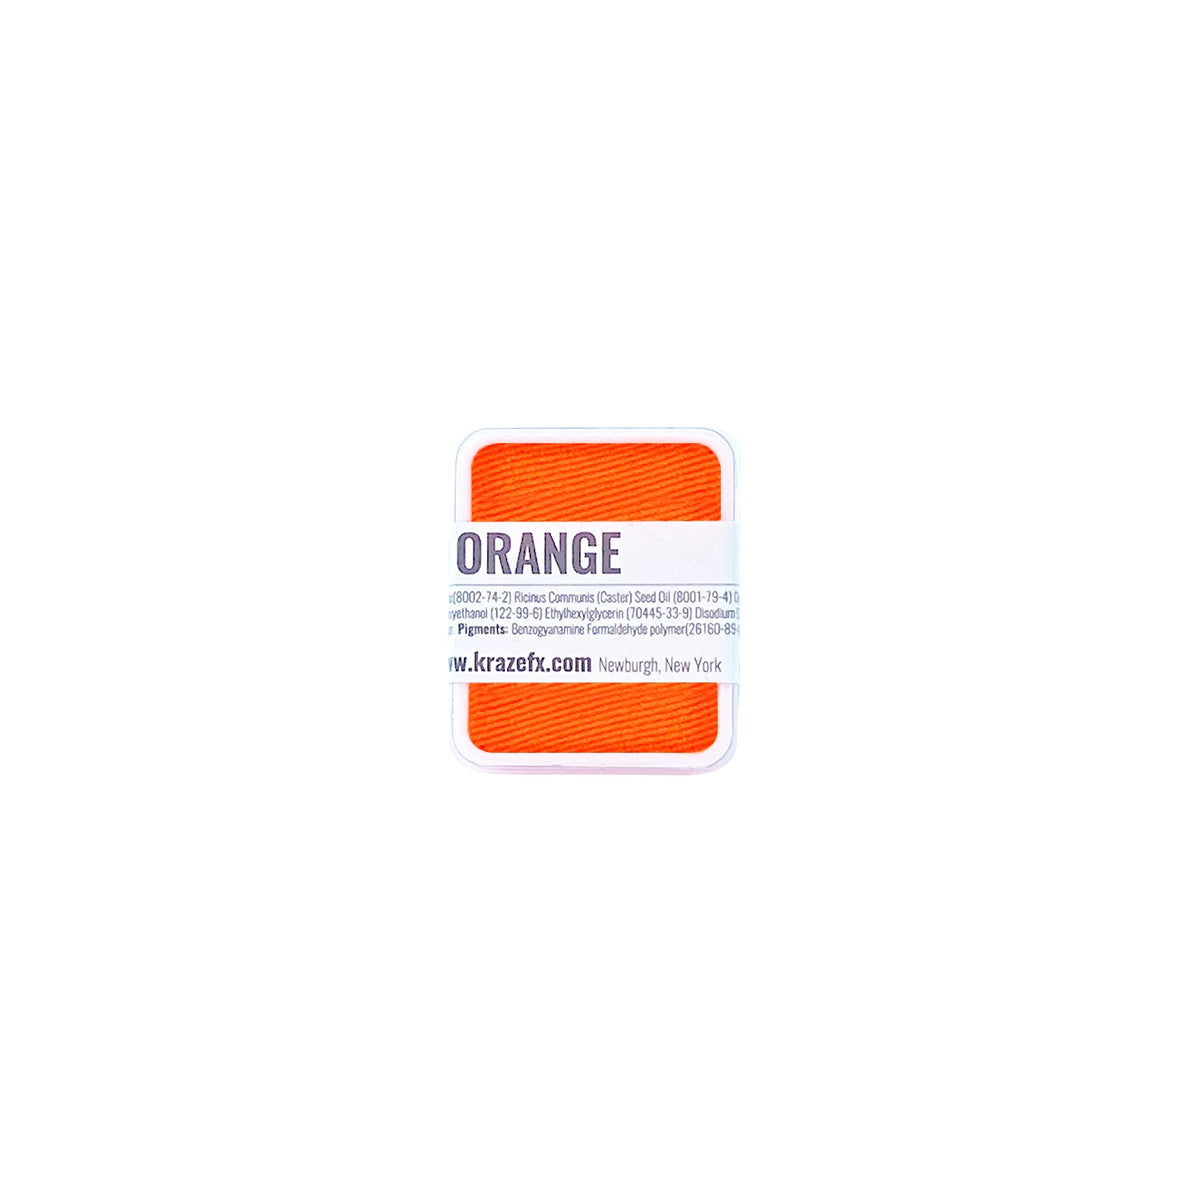 Kraze FX Face Paint Palette Refill - Neon Orange (0.21 oz/6 gm)